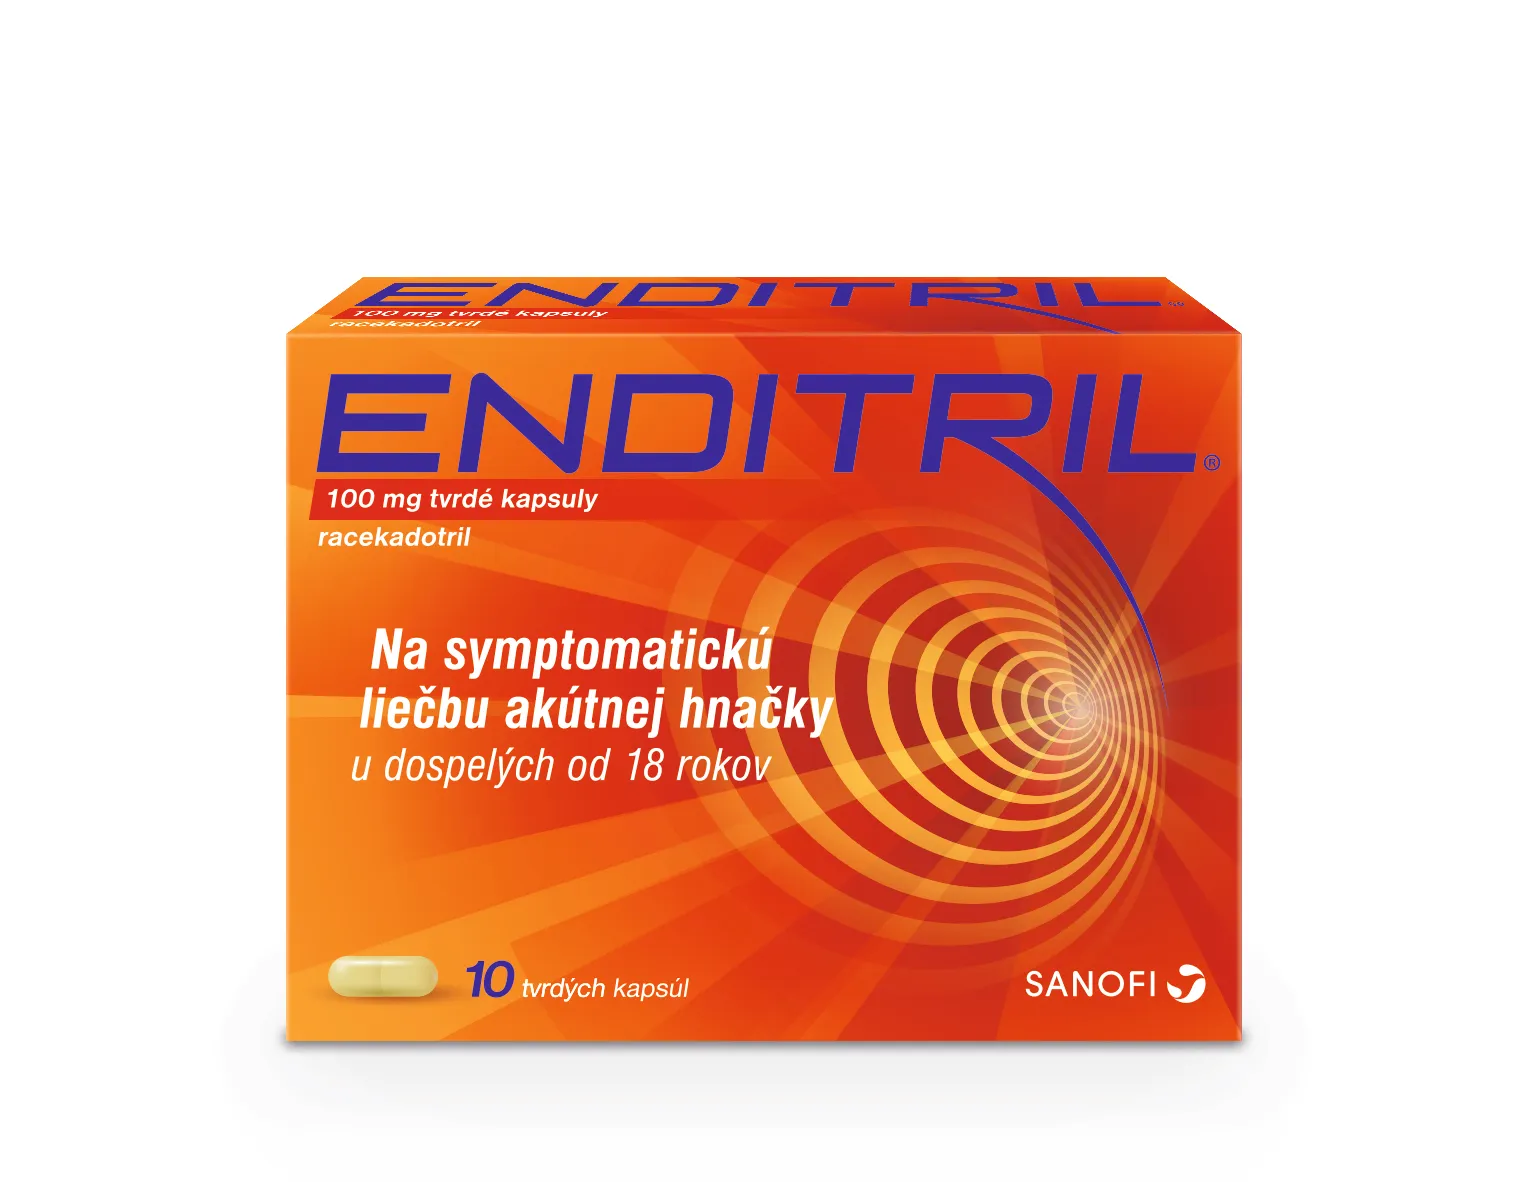 Enditril